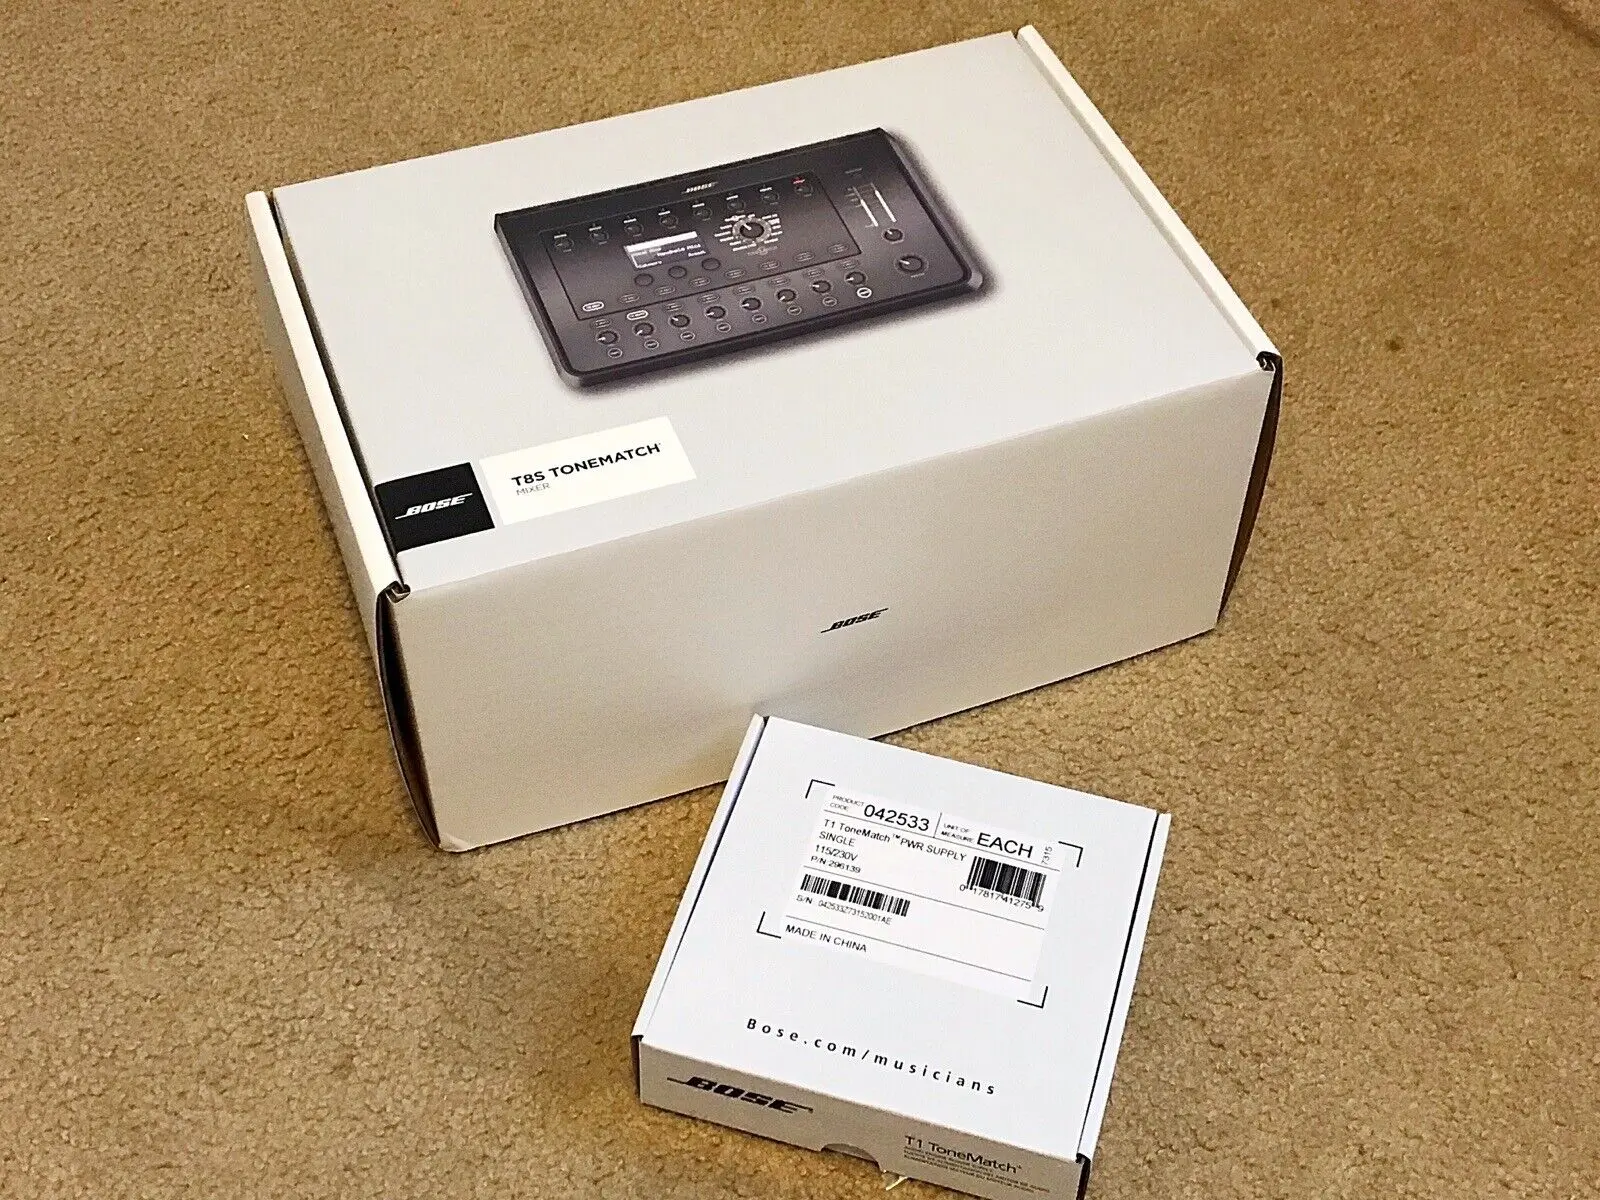 

Летняя скидка 100%, распродажа на Bose T8S ToneMatch, 8-канальный аудиомикшер и USB-интерфейс